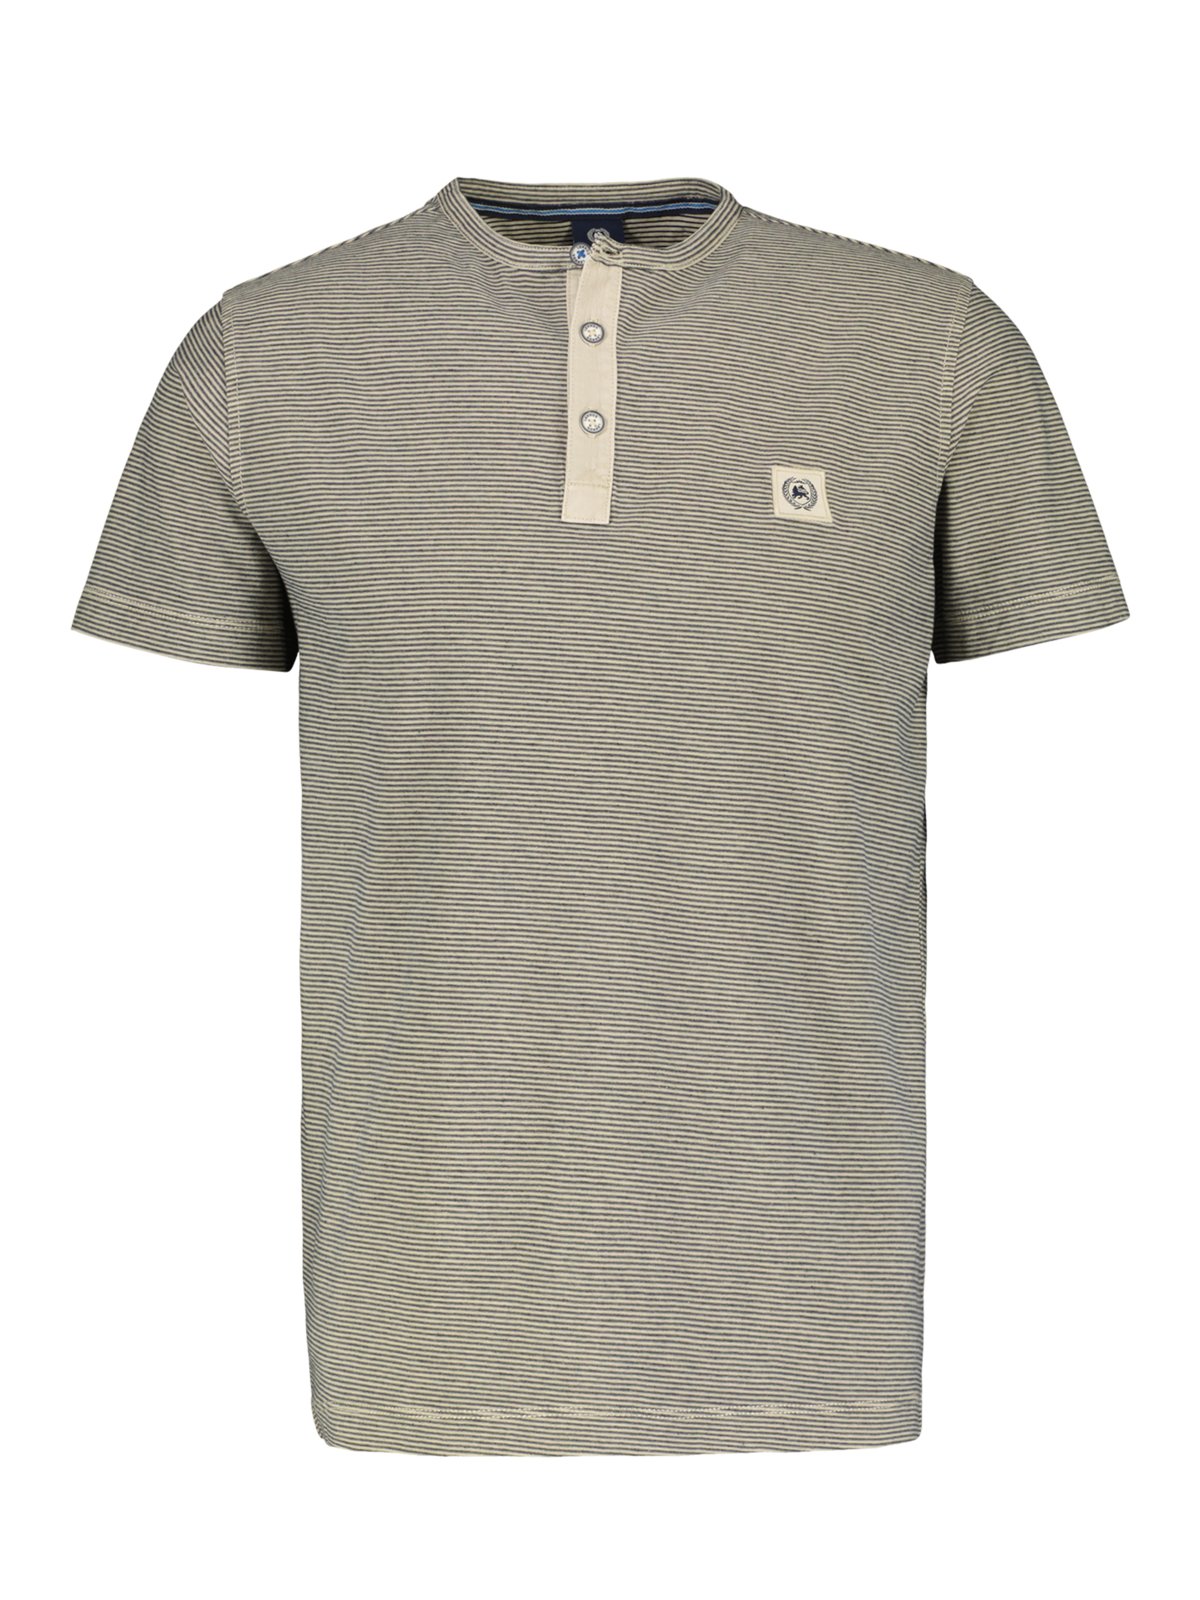 Lerros T-Shirt mit Serafino-Kragen und Streifen Muster